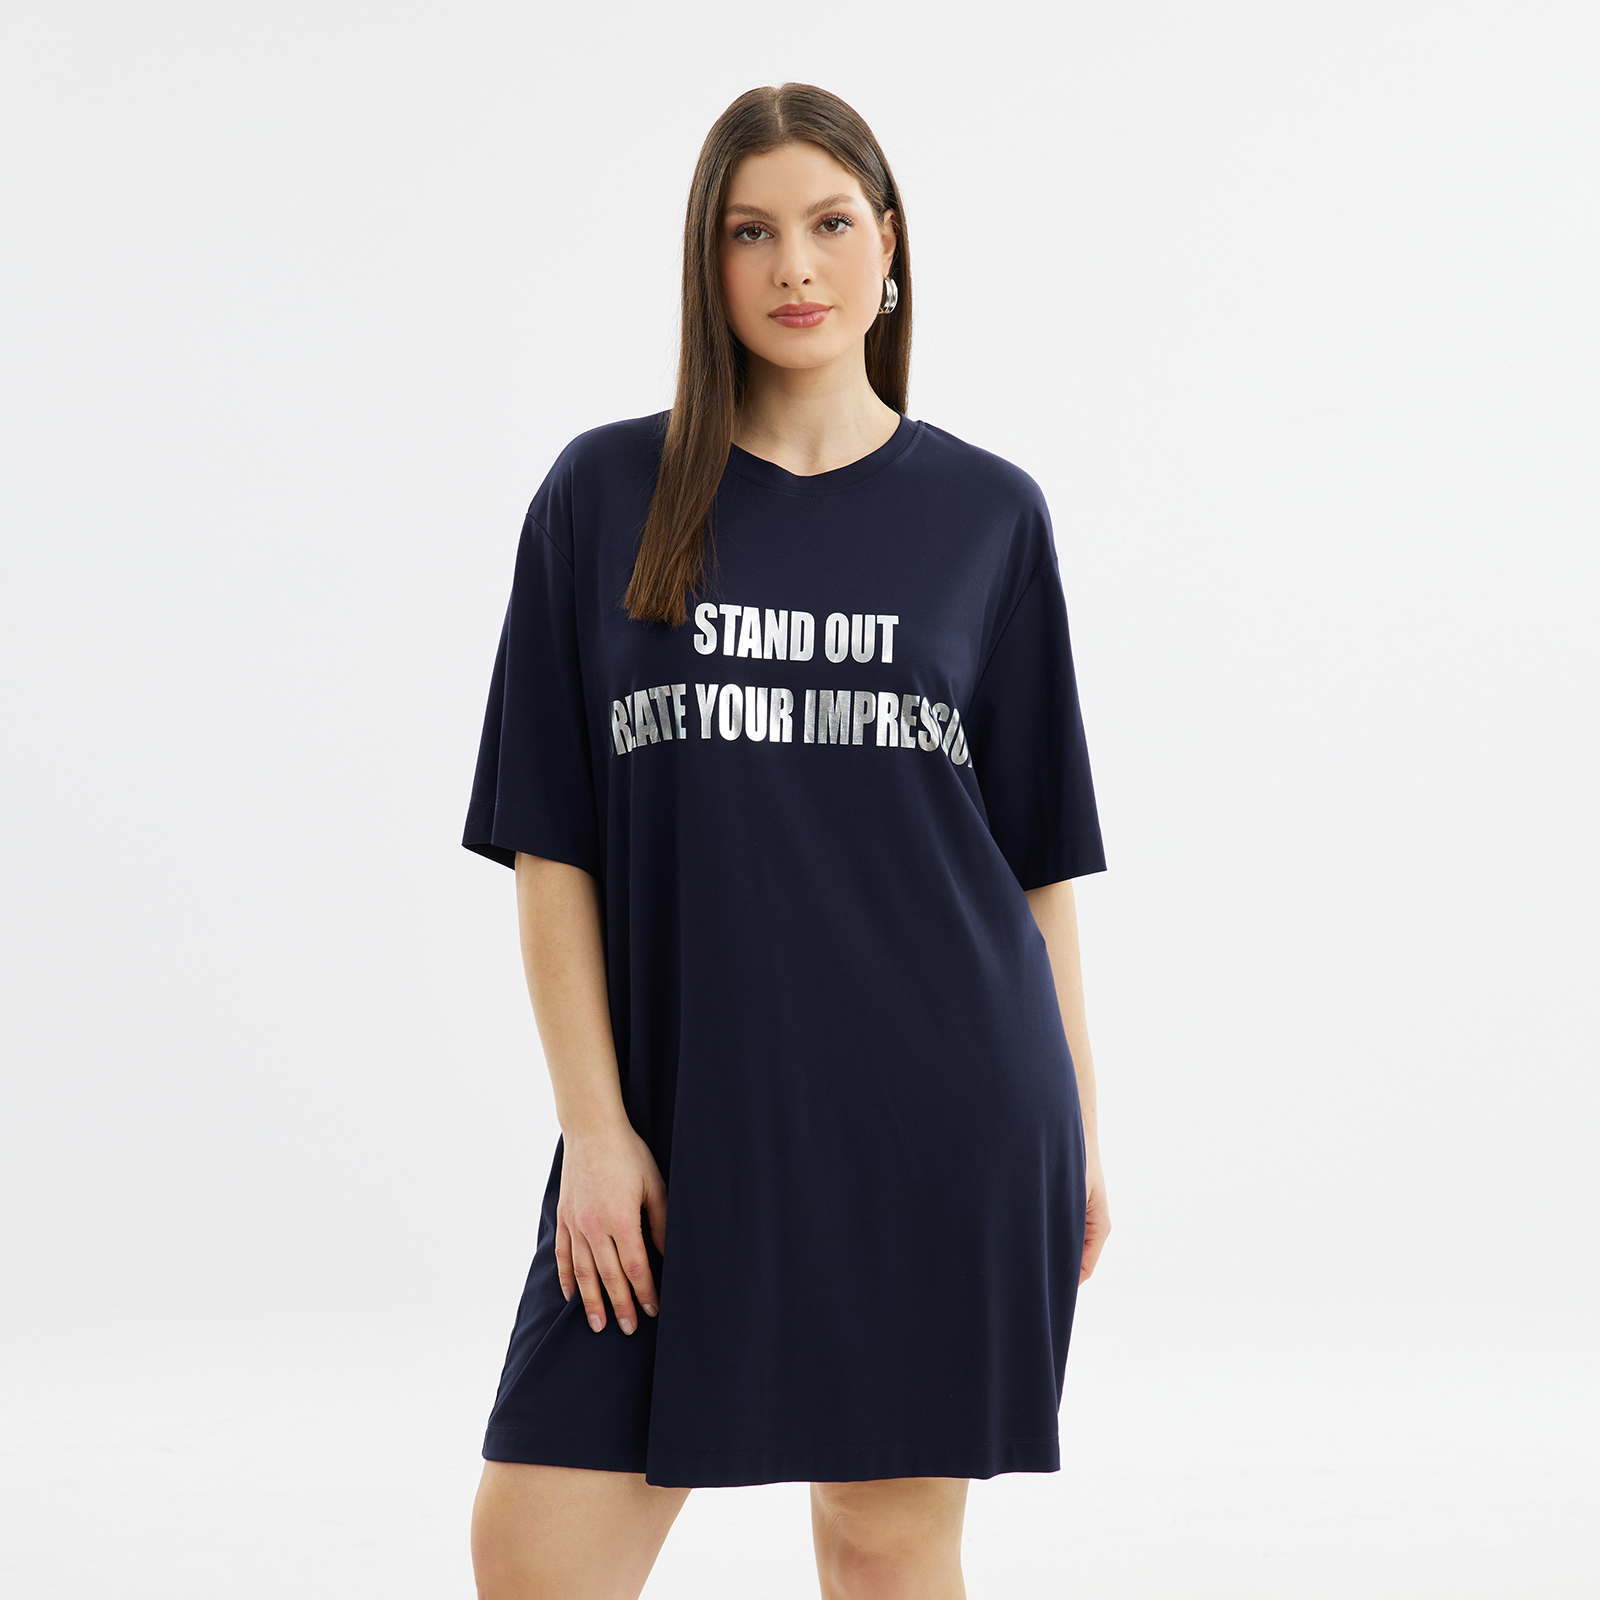 Φόρεμα t-shirt με metallic prints 8101.7191-blue